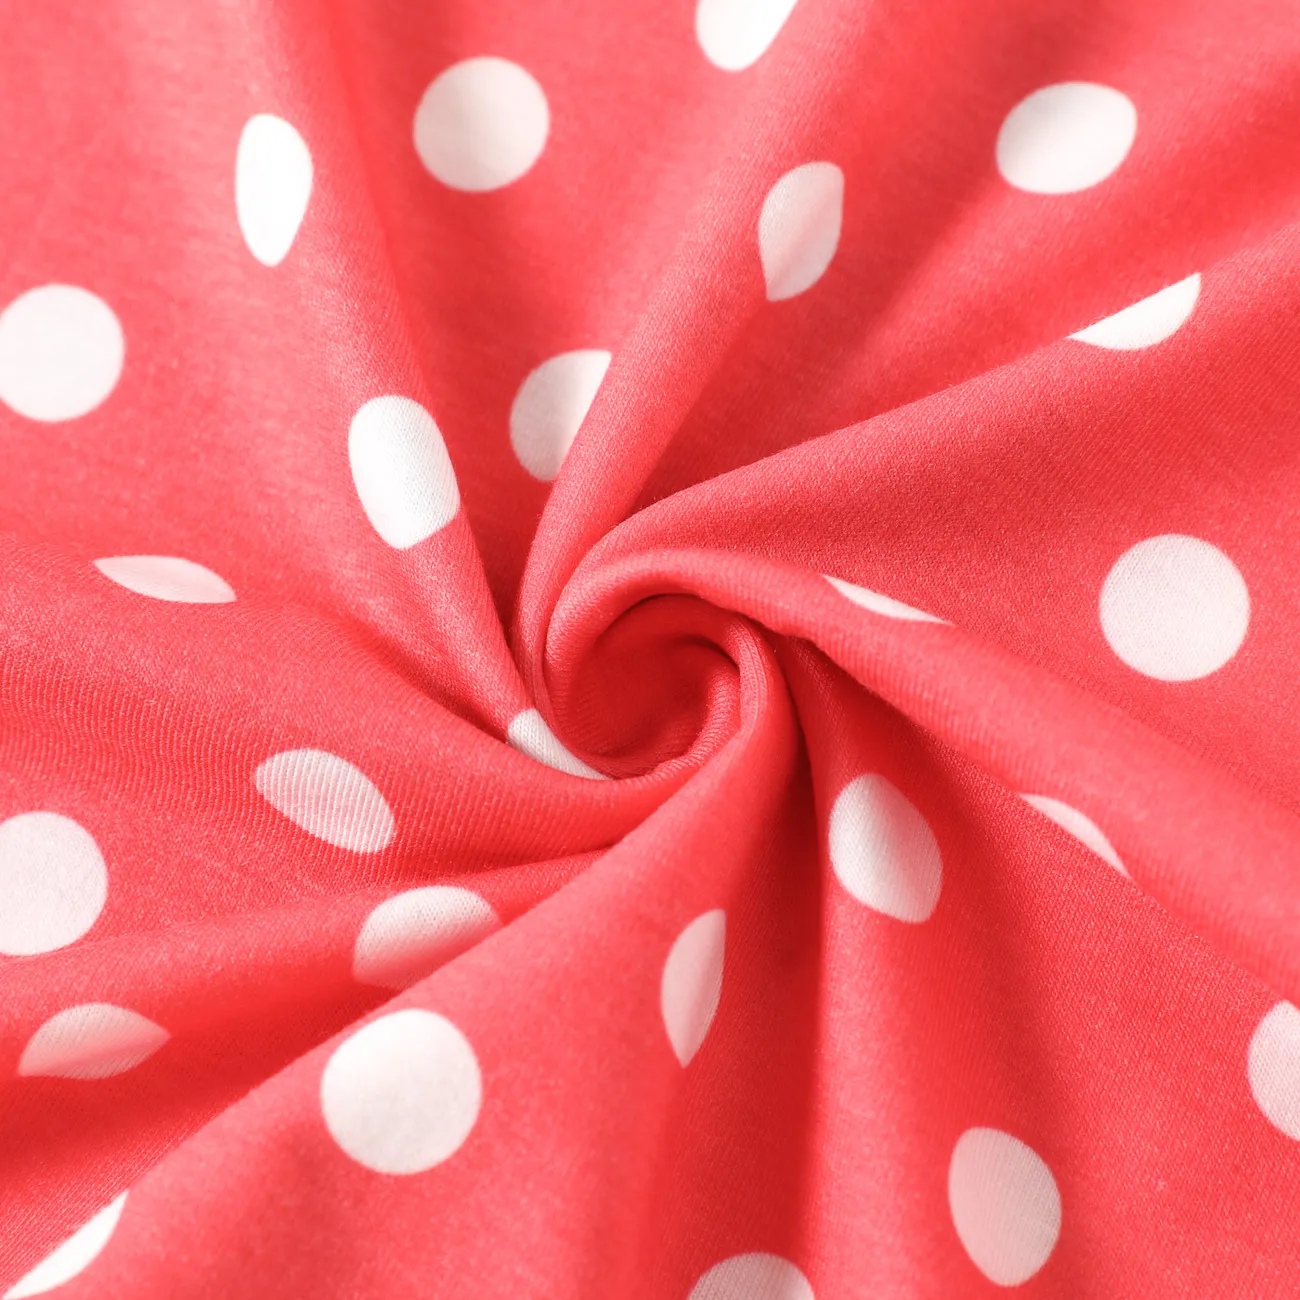 Disney Princess Baby Girl Naia™ Character & Polka Dots Print Long-sleeve Jumpsuit  Red big image 1